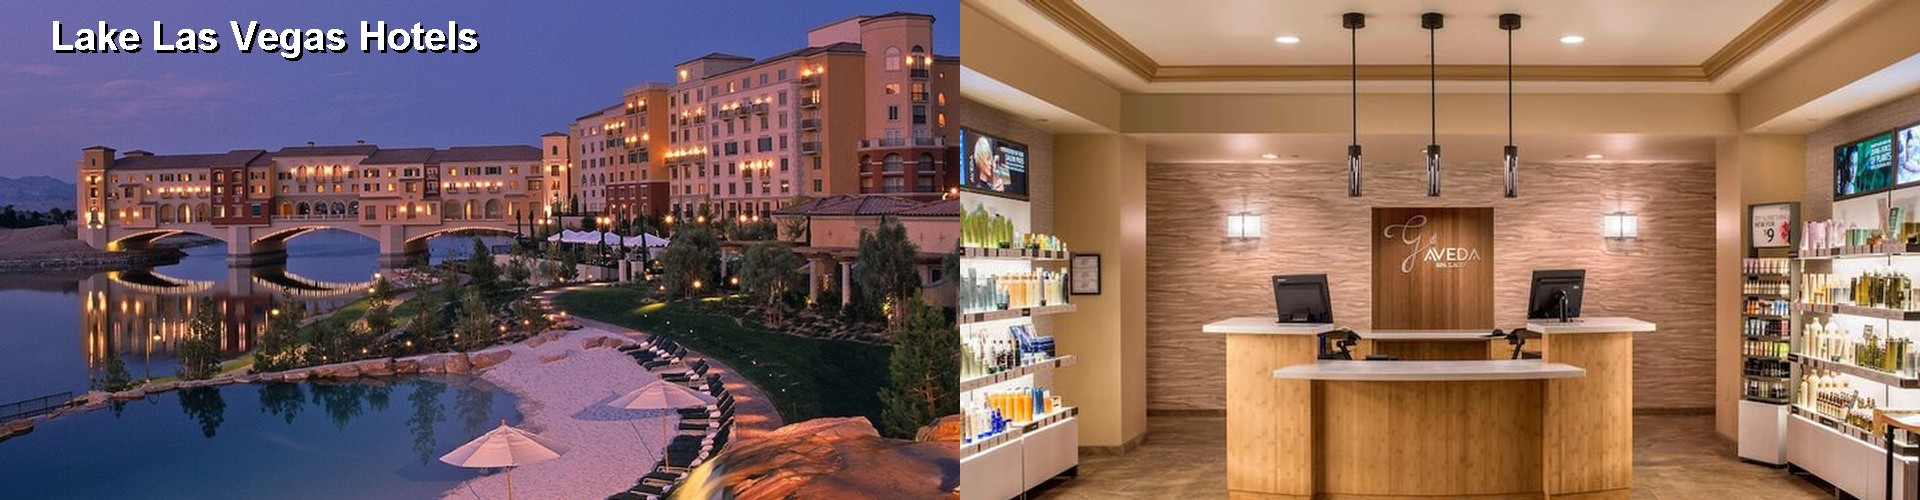 5 Best Hotels near Lake Las Vegas